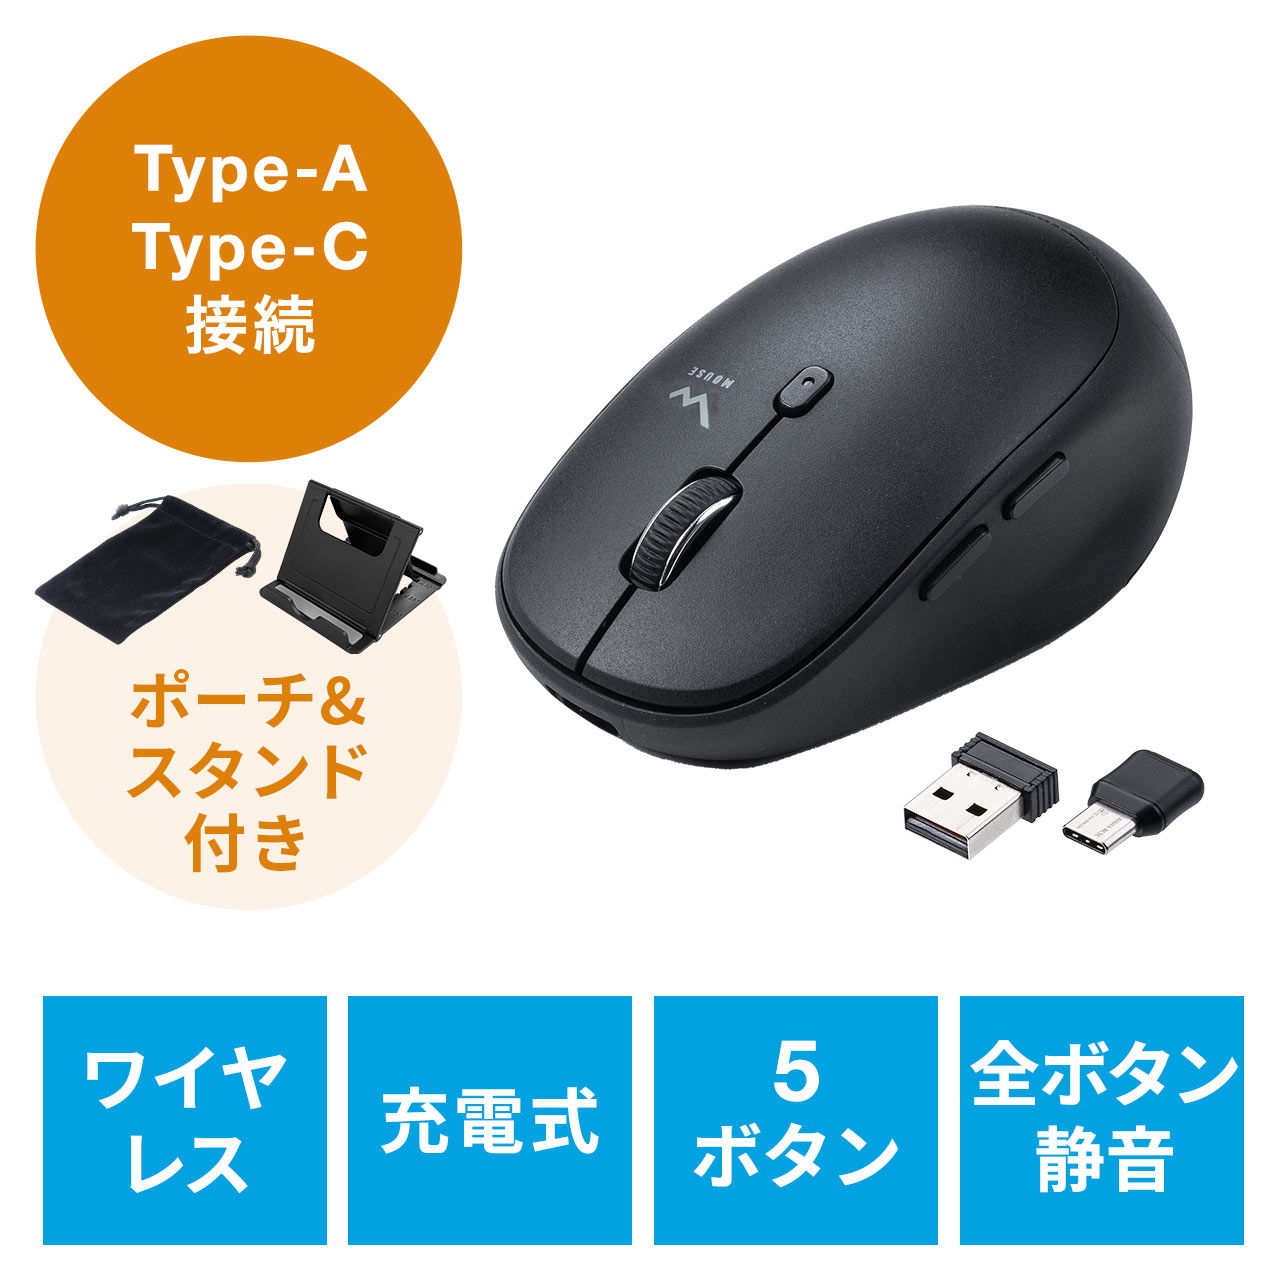 ワイヤレスマウス 充電マウス コンボマウス Type-C Type-A 静音マウス 充電式 スマホスタンド付き ポーチ付き  400-MAWC173BKの販売商品 通販ならサンワダイレクト